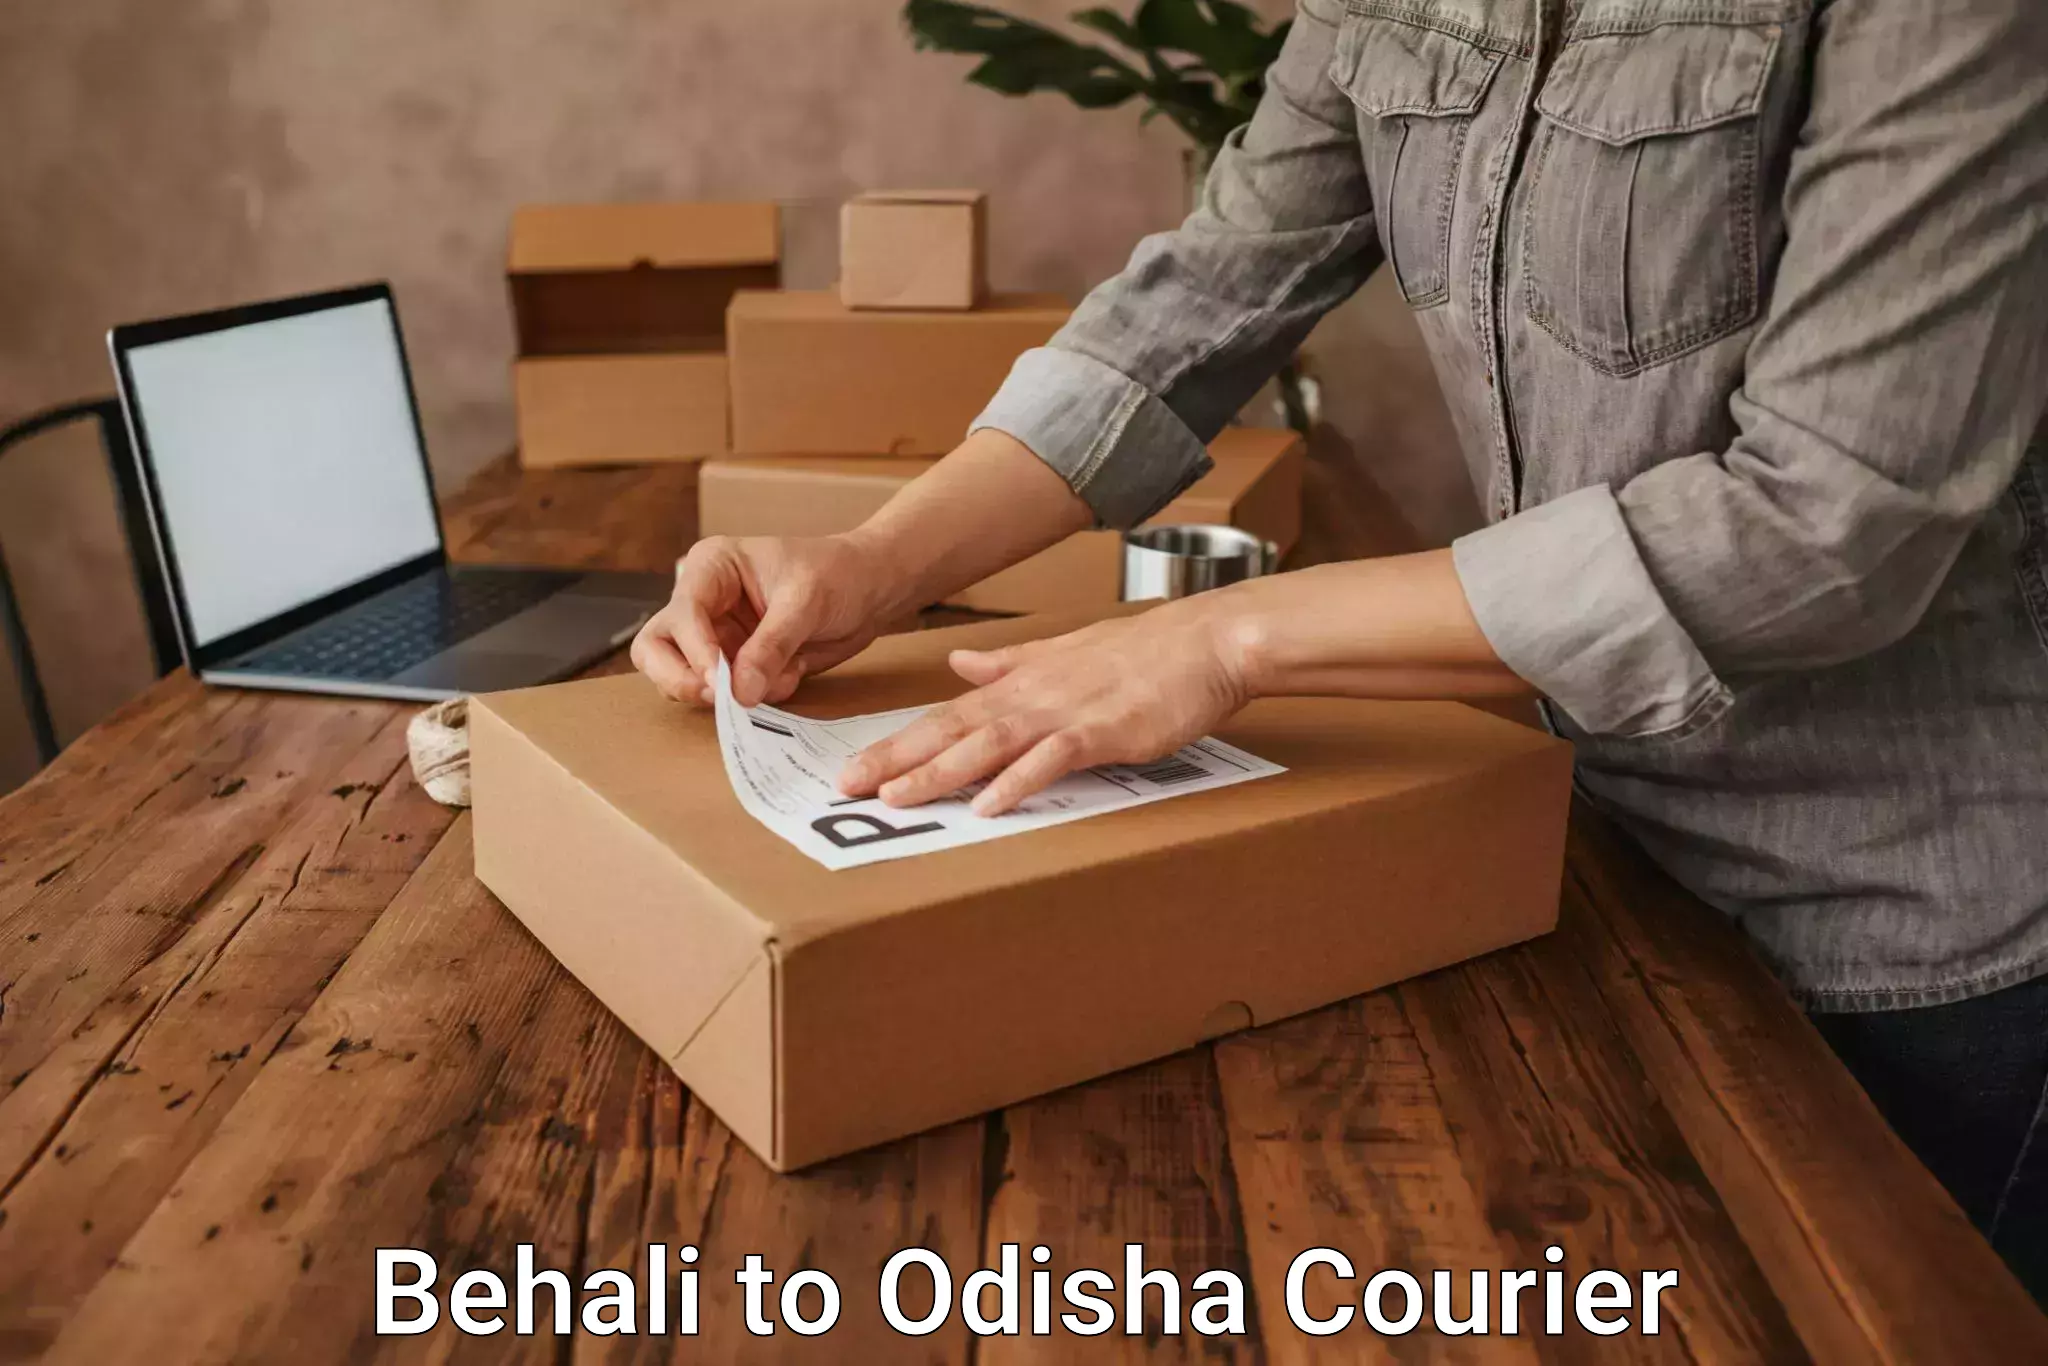 Urgent courier needs Behali to Bargarh